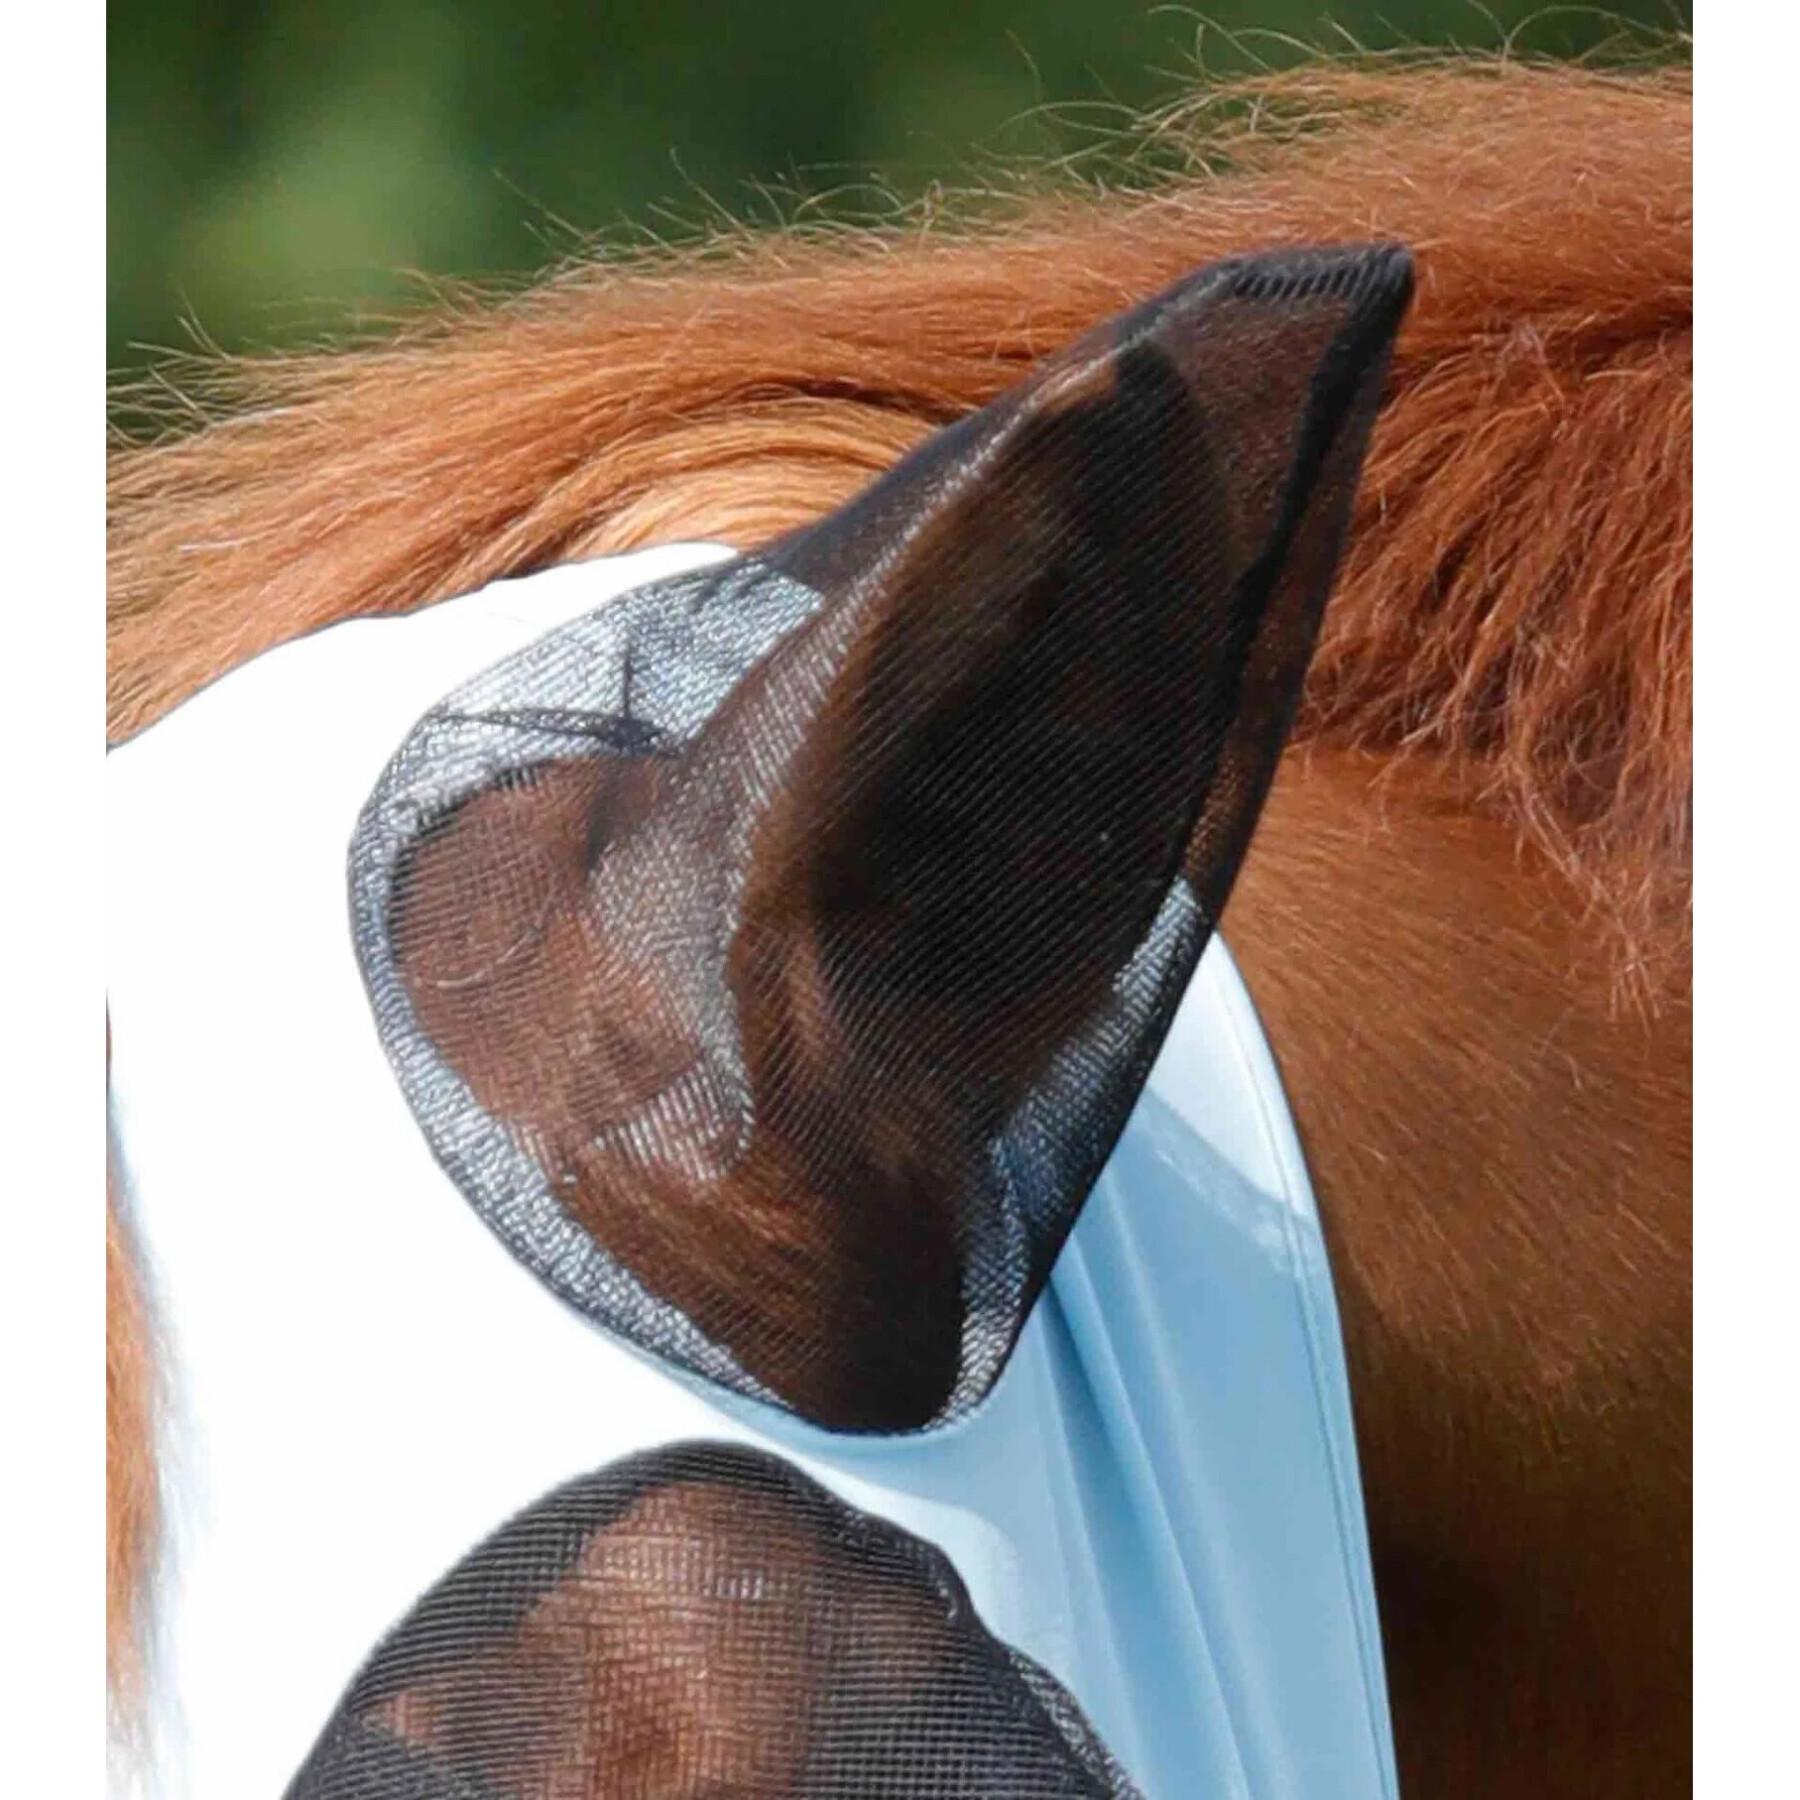 Máscara anti-voo para cavalos Premier Equine Comfort Tech Xtra Lycra